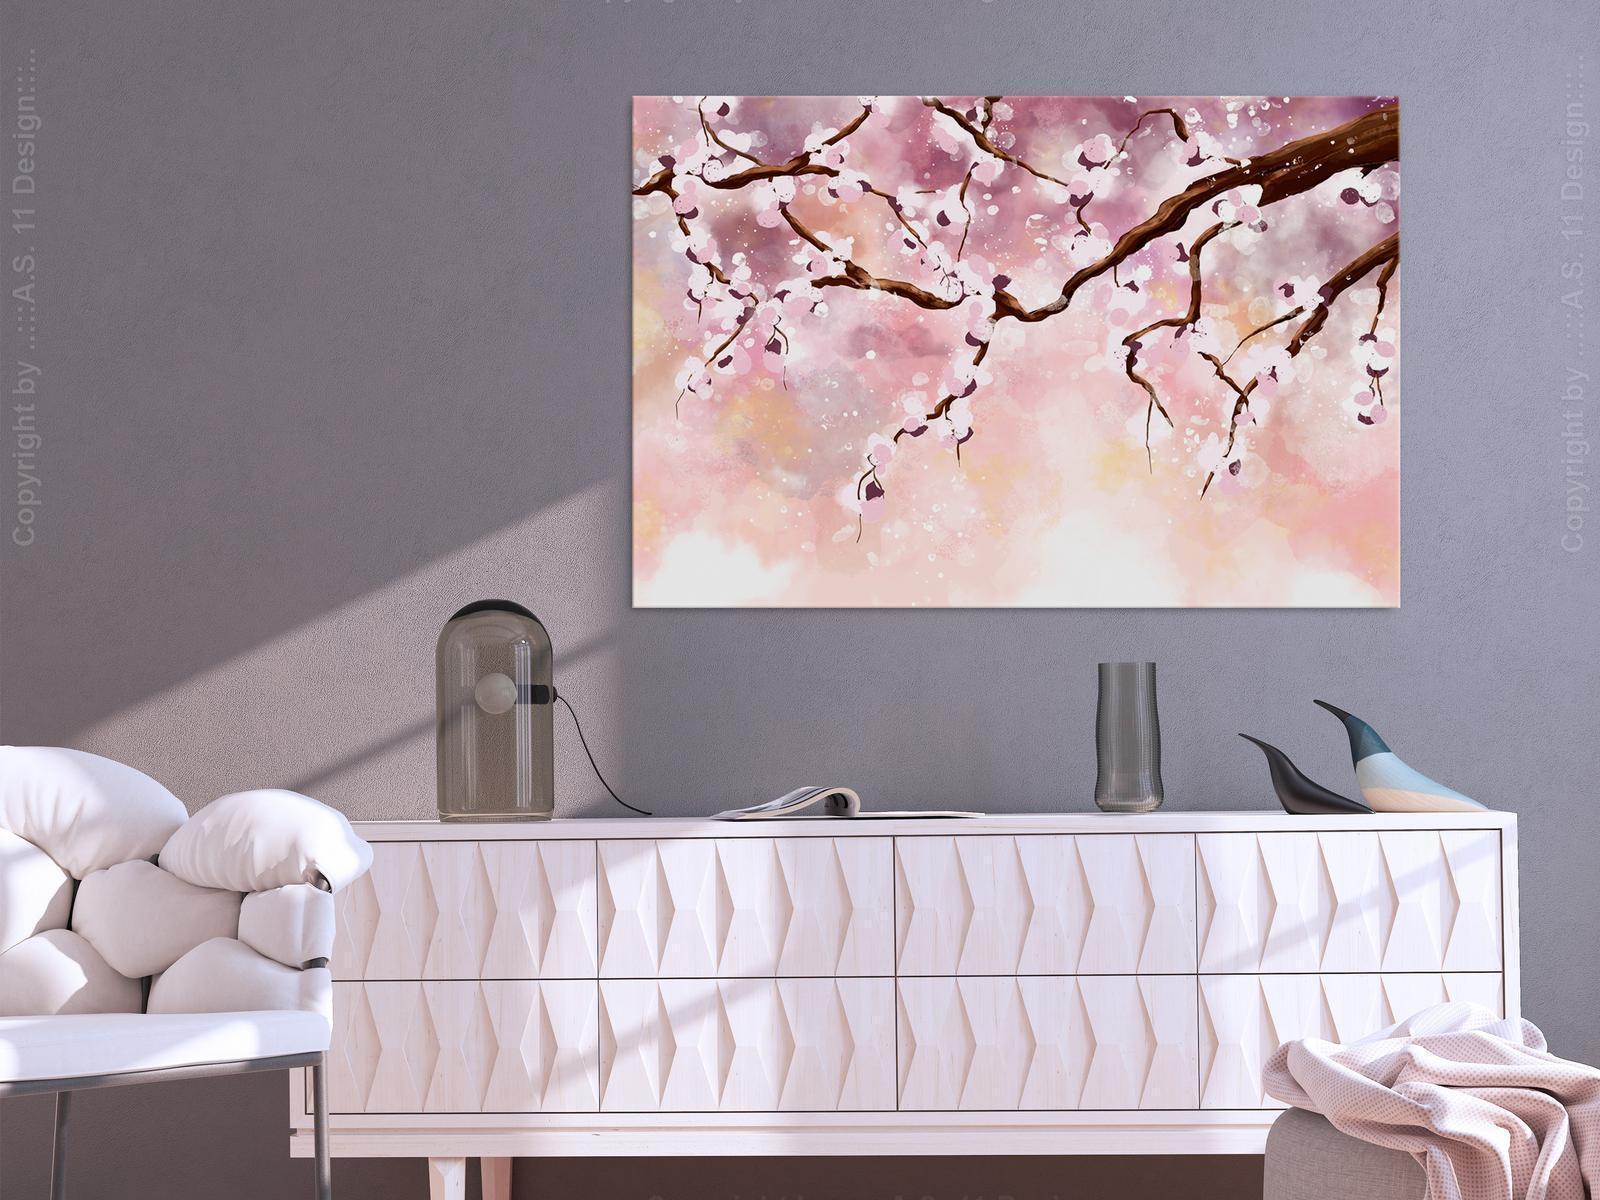 Tableau - Cherry Blossoms (1 Part) Wide